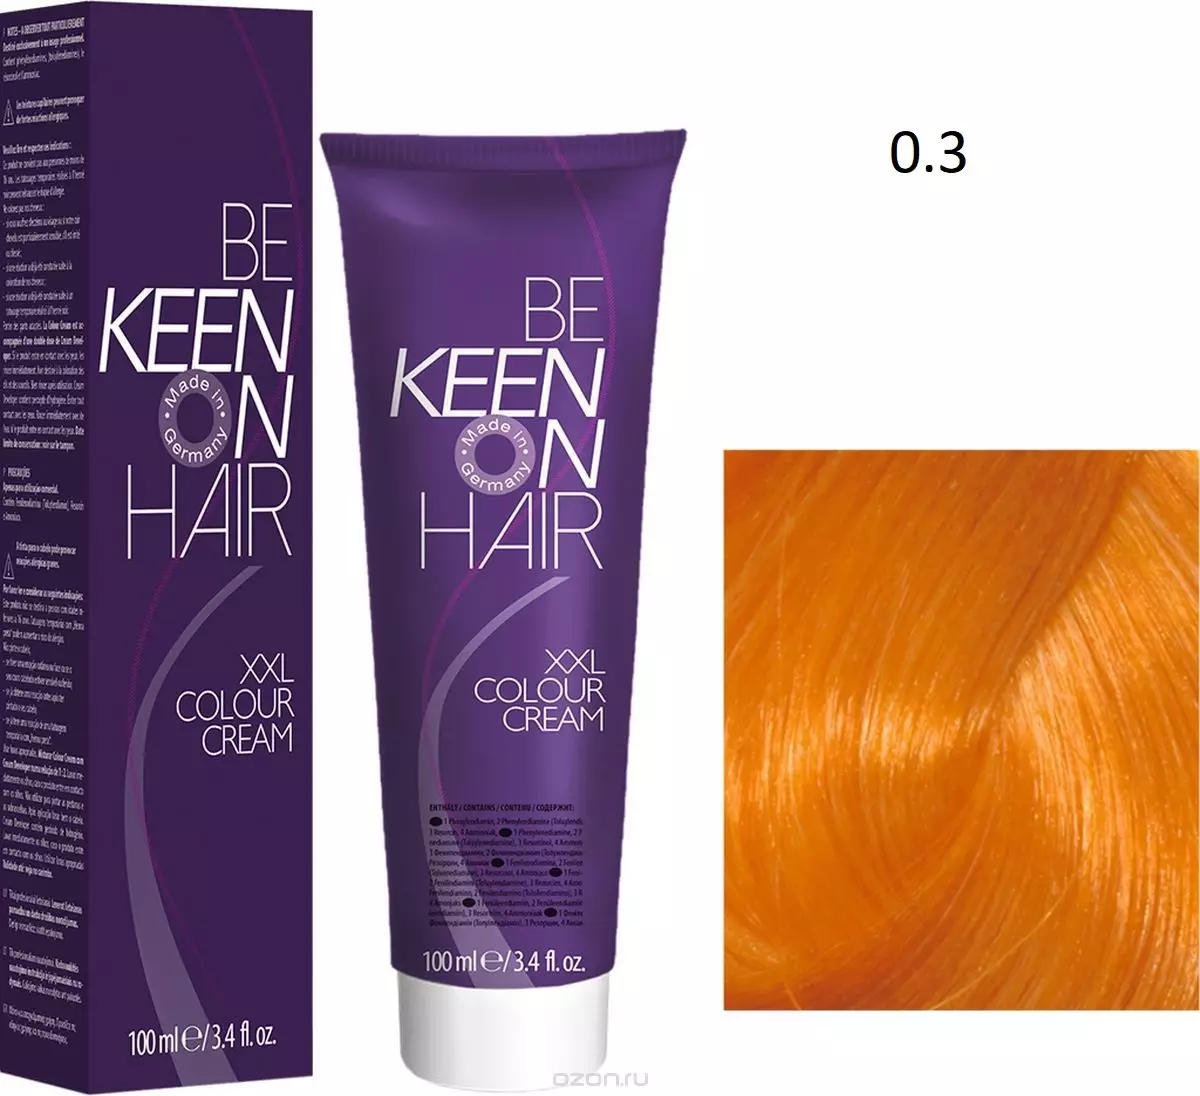 Keen Hair Paint (26 photos): Setšoantšo sa Setšoantšo sa Jeremane sa Breag ea Sejeremane, PAELETSE, PARTET 5397_16